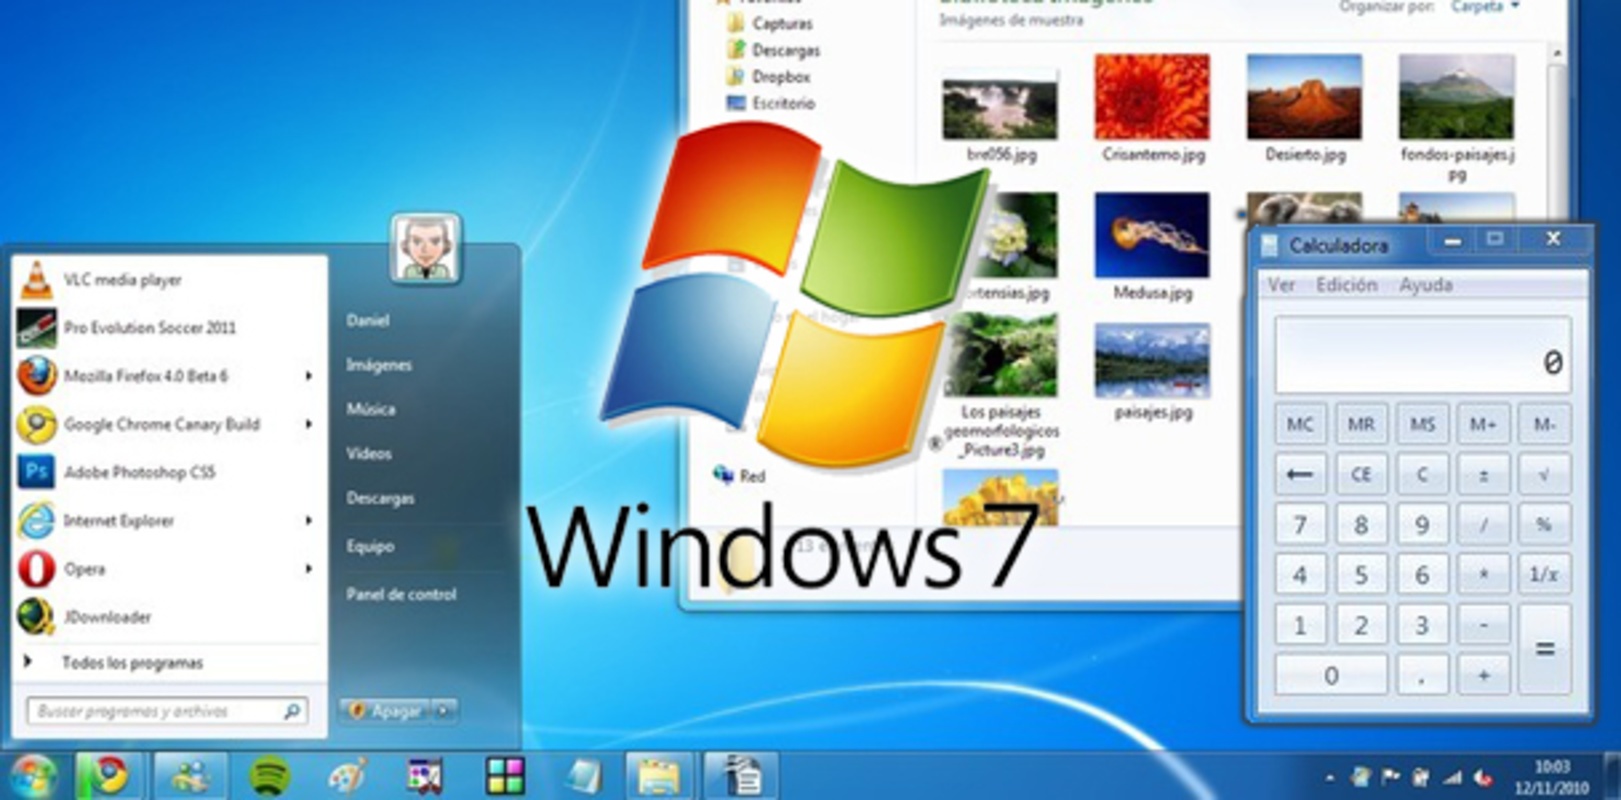 Windows 7 August 2018 (32-bit) for Windows Screenshot 1